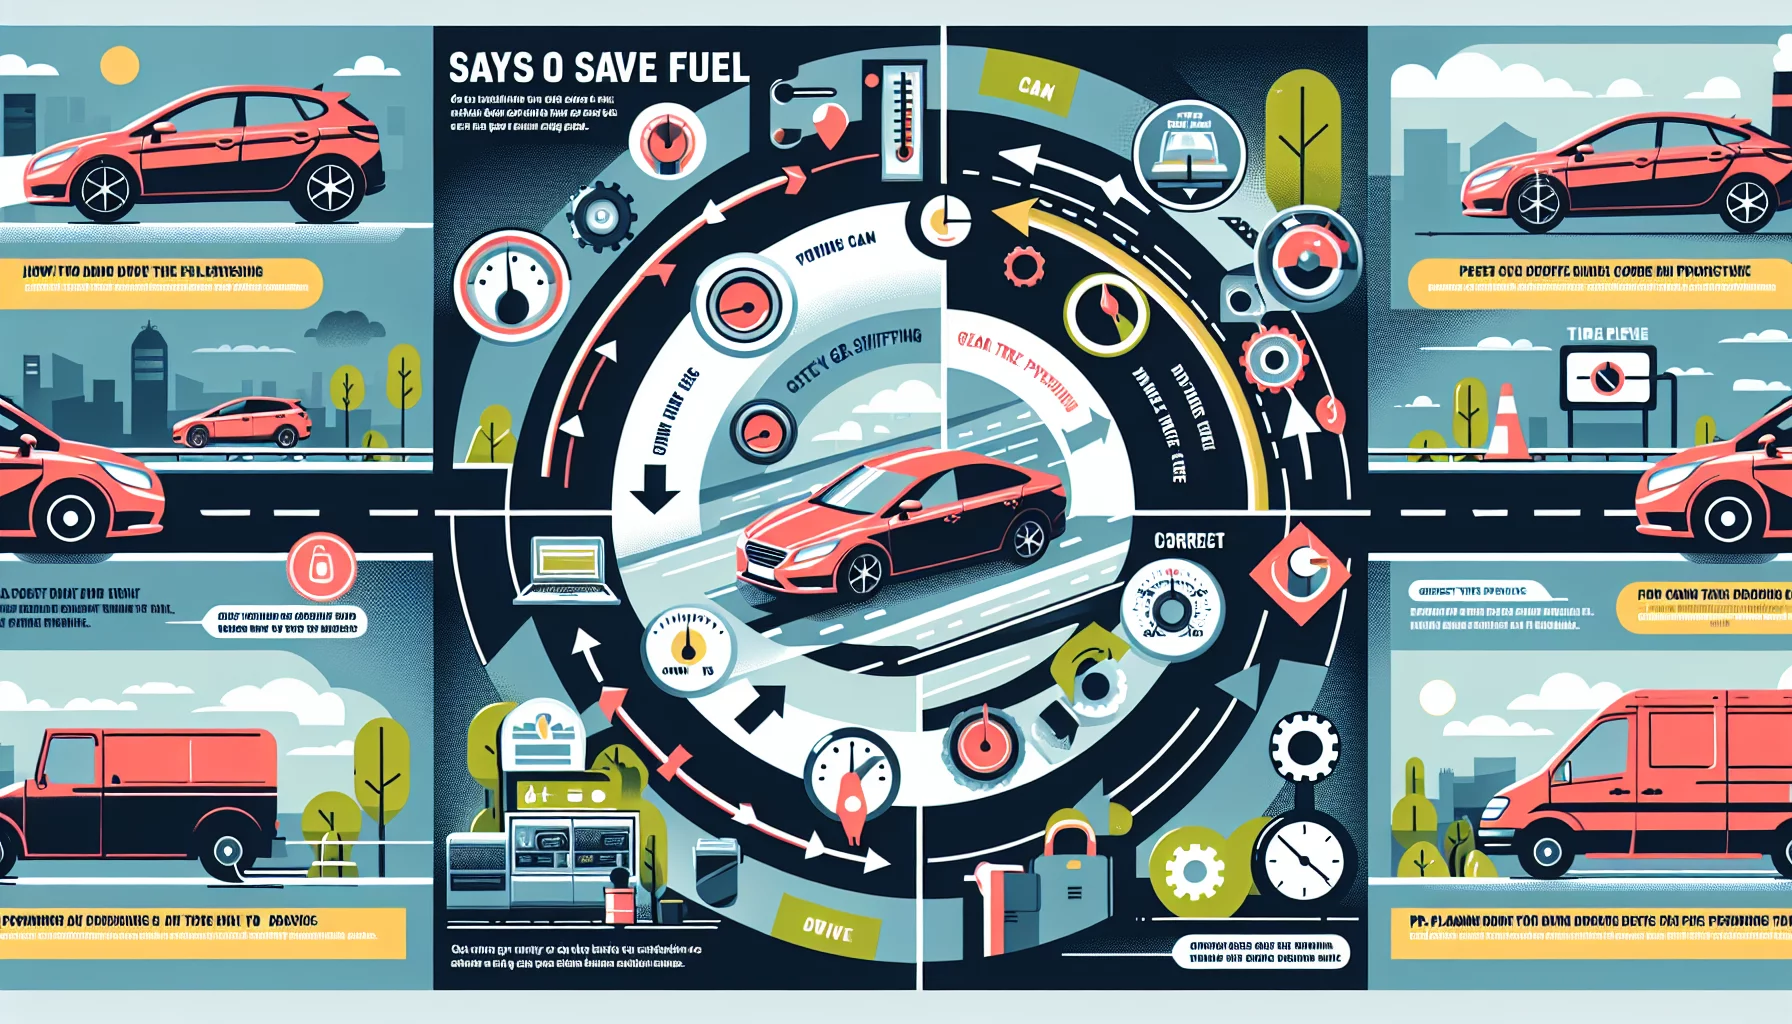 Comment faire pour économiser du carburant en conduisant
